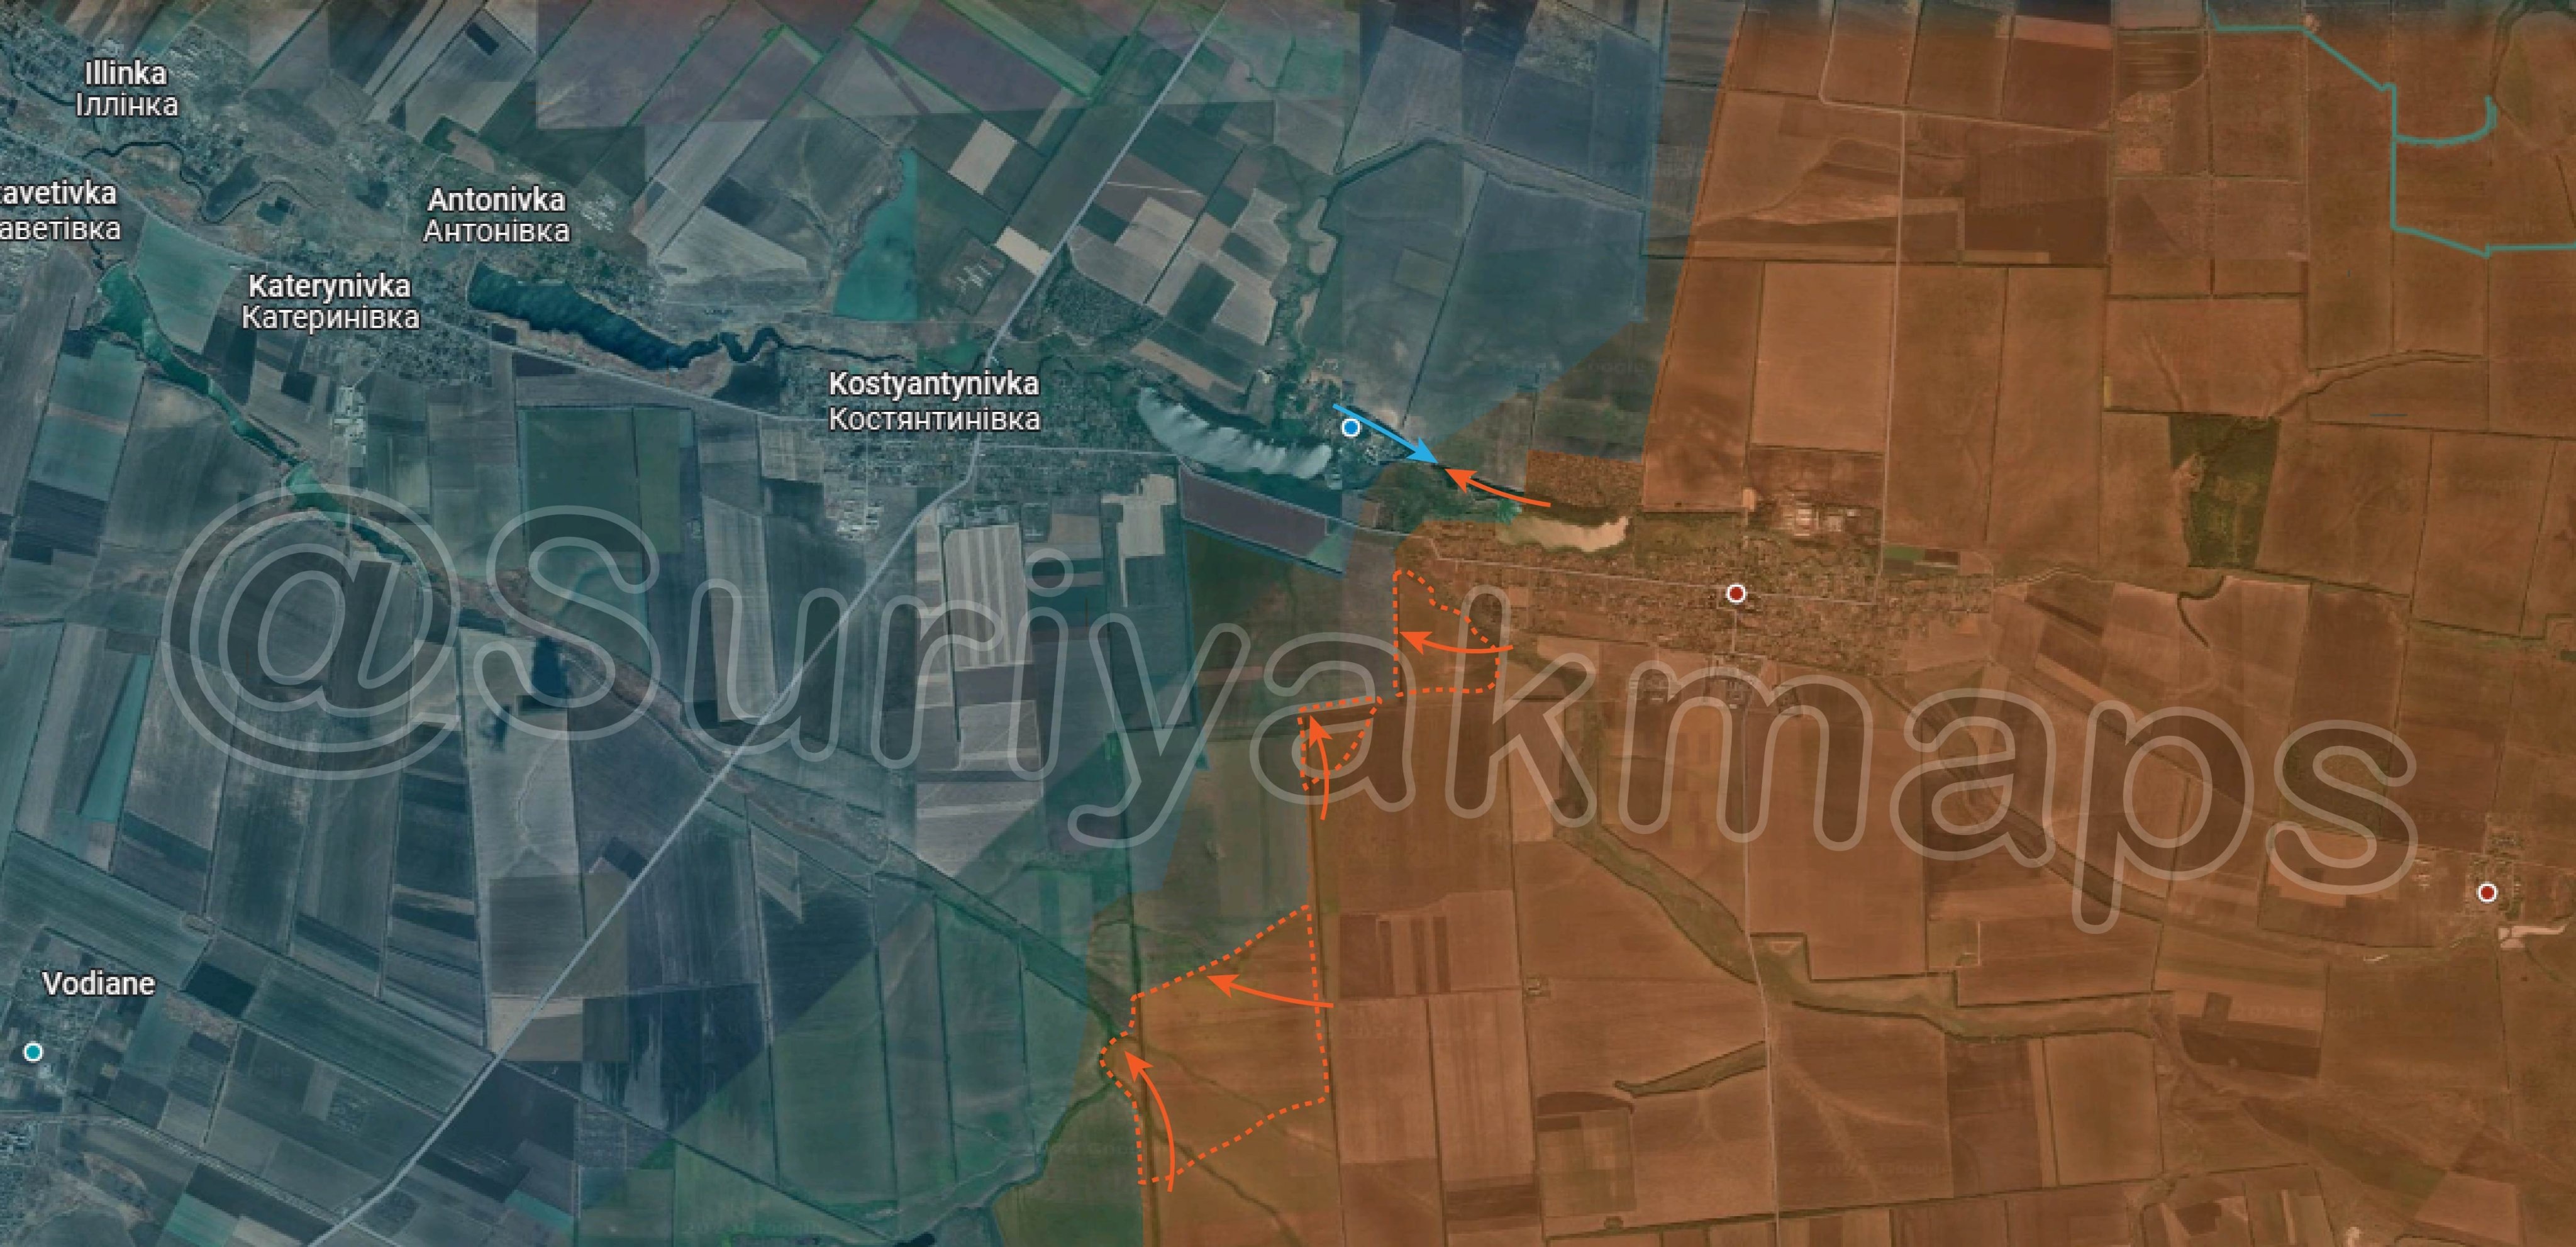 Bản đồ chiến sự Ukraine tại Kostyantynivka - Ugledar ngày 1/5. Trong đó, Nga kiểm soát phần màu nâu, các mũi tên màu cam thể hiện hướng tấn công của họ và khu vực bao quanh bởi nét đứt màu cam là nơi lực lượng Moscow vừa giành được, lực lượng Kiev phản kích theo các mũi tên xanh (Ảnh: Suriyakmaps).